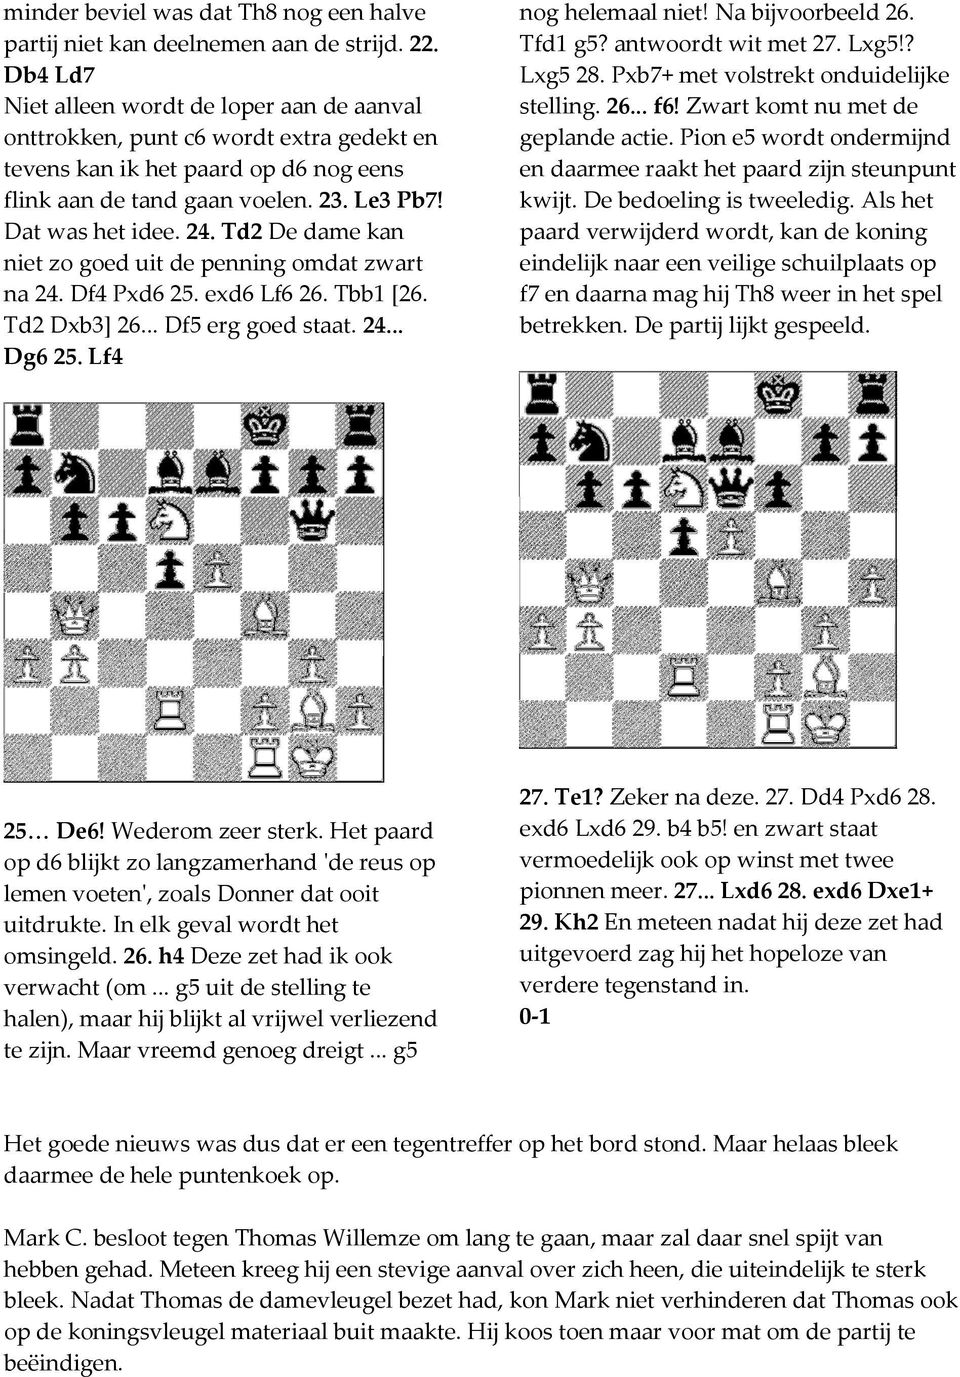 Td2 De dame kan niet zo goed uit de penning omdat zwart na 24. Df4 Pxd6 25. exd6 Lf6 26. Tbb1 [26. Td2 Dxb3] 26... Df5 erg goed staat. 24... Dg6 25. Lf4 nog helemaal niet! Na bijvoorbeeld 26. Tfd1 g5?